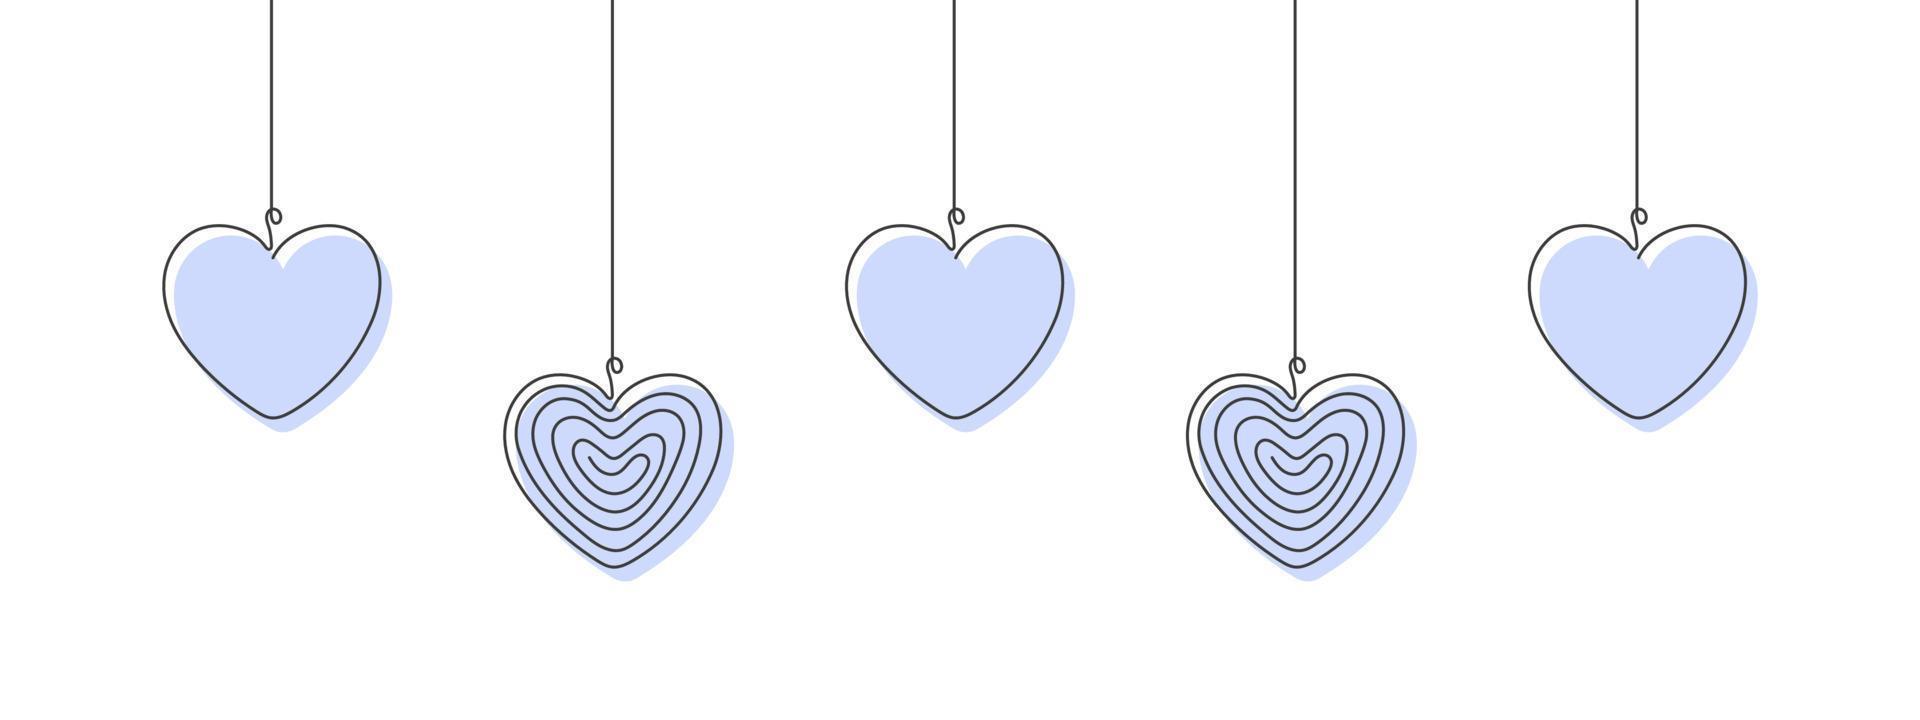 corazones dibujados en una línea. elementos navideños. tema de navidad ilustración vectorial vector